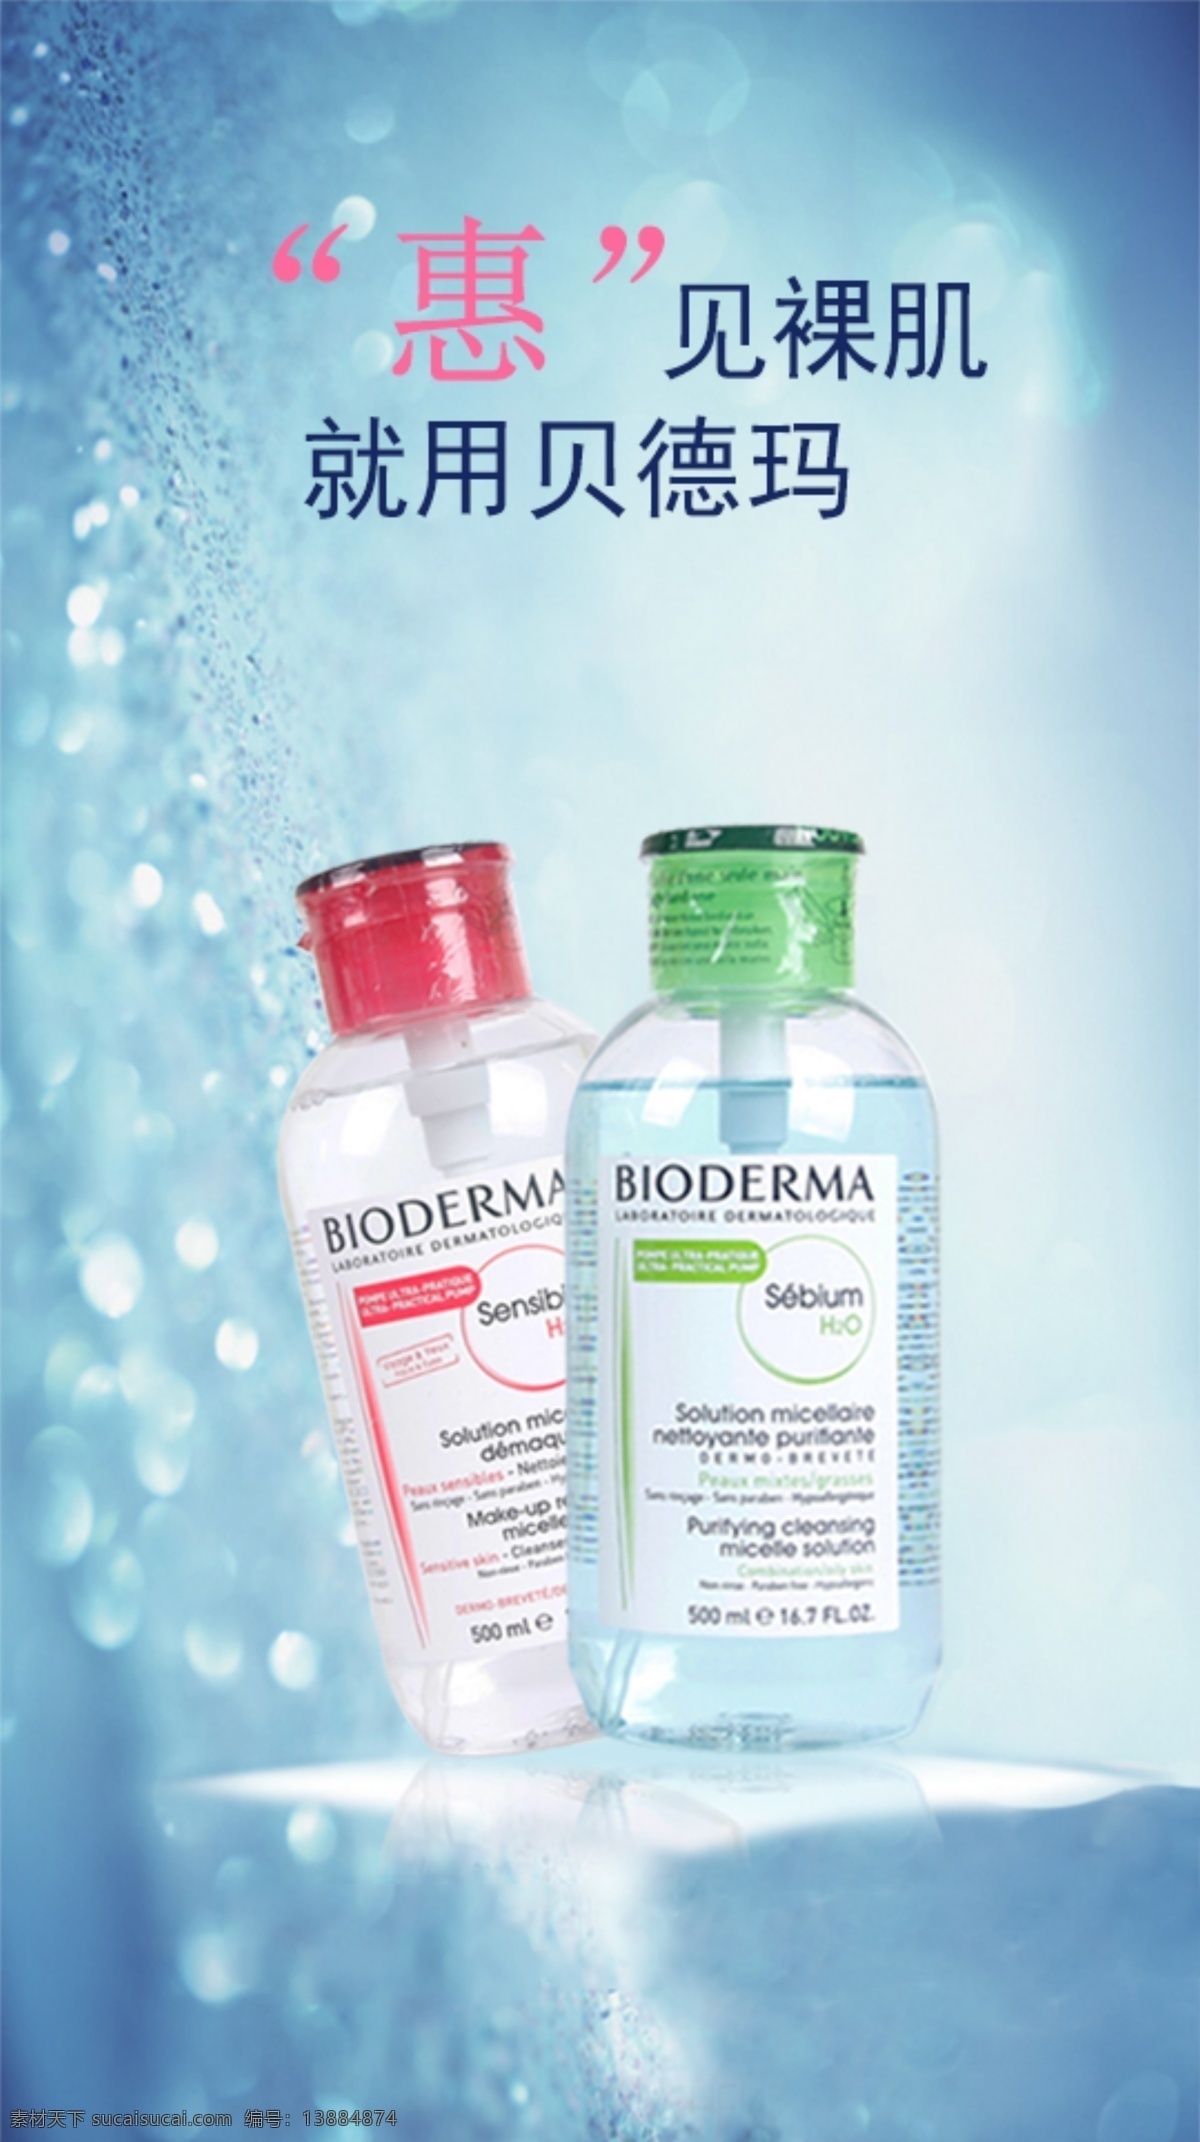 贝德玛广告图 广告图 贝德玛 卸妆水 主图 化妆品 海报 移动界面设计